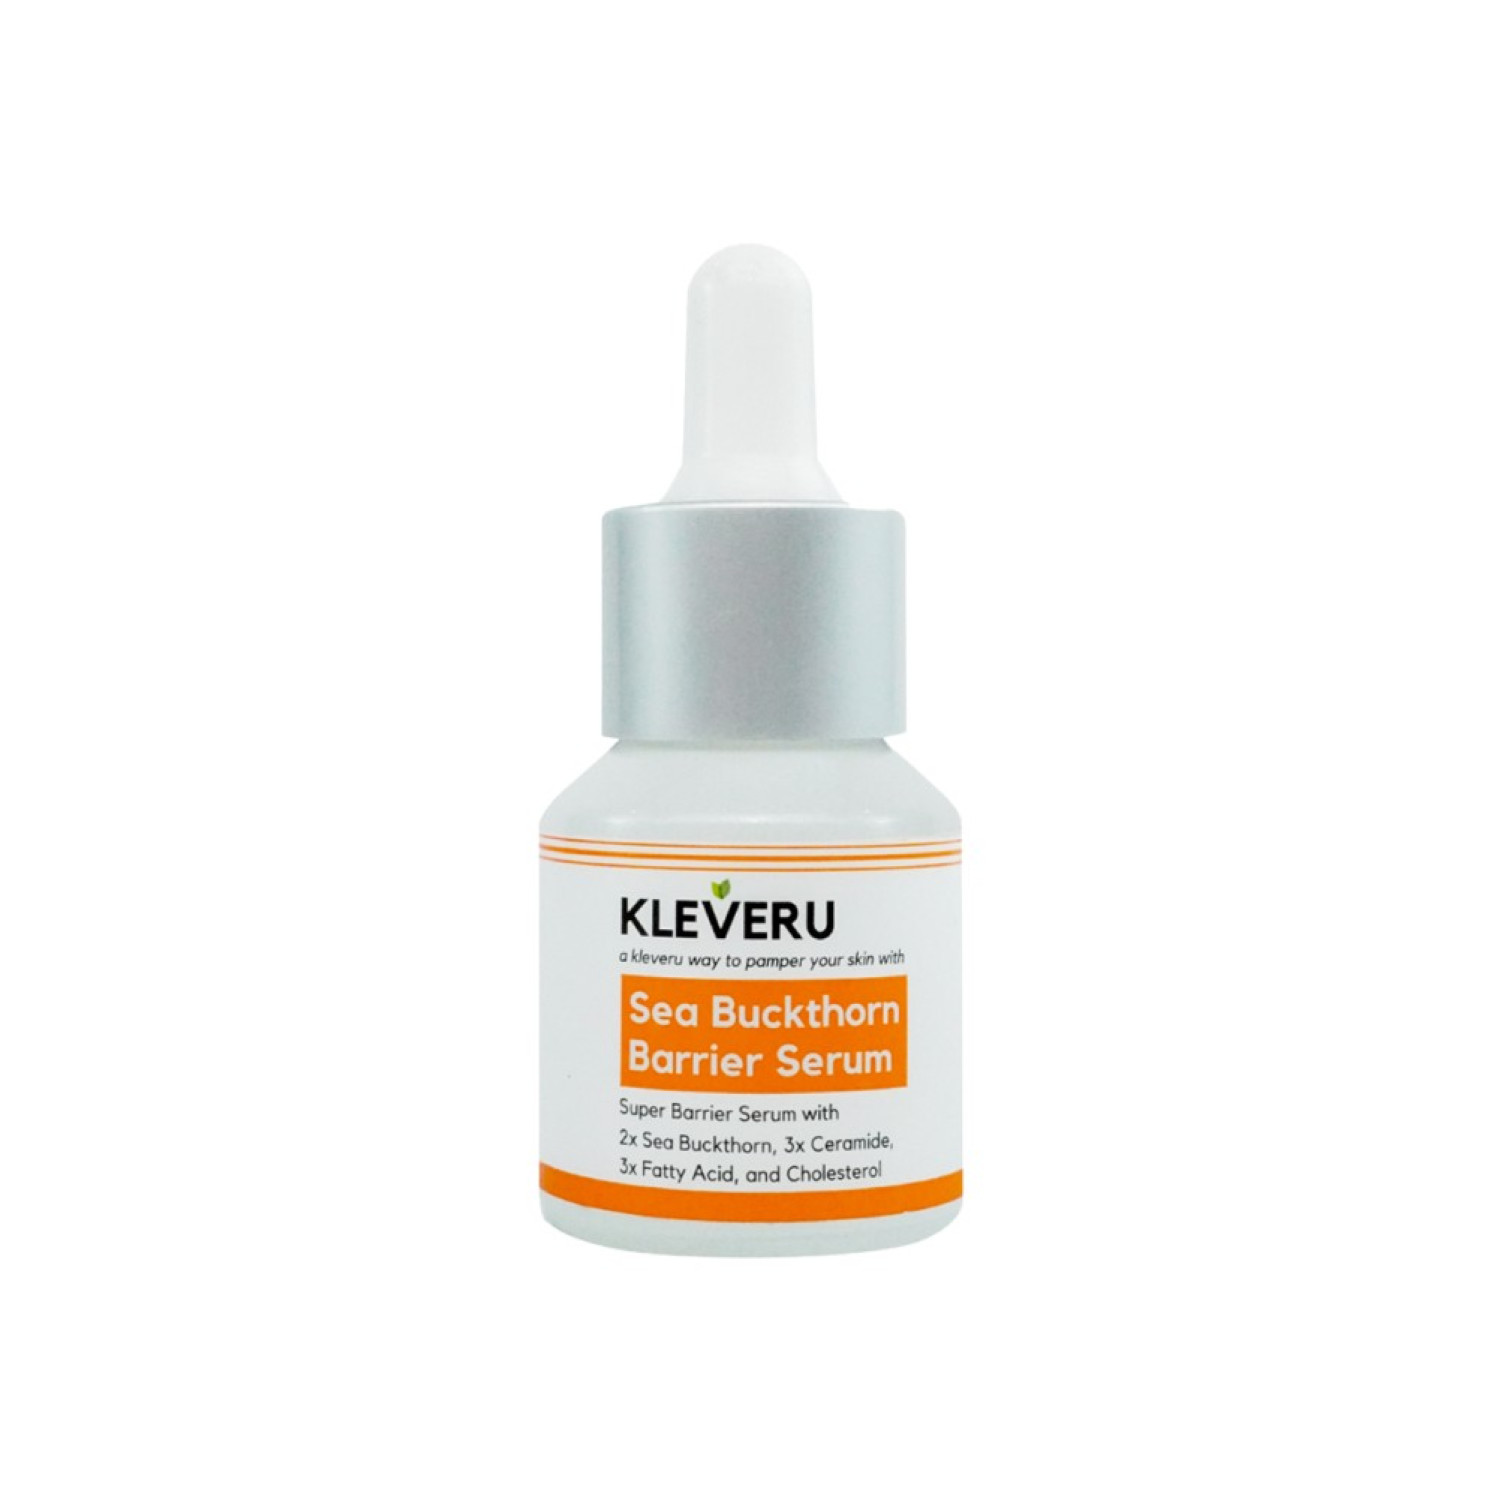 kleveru-sea-buckthorn-barrier-serum-30-ml-65d2d365a4e66.jpeg